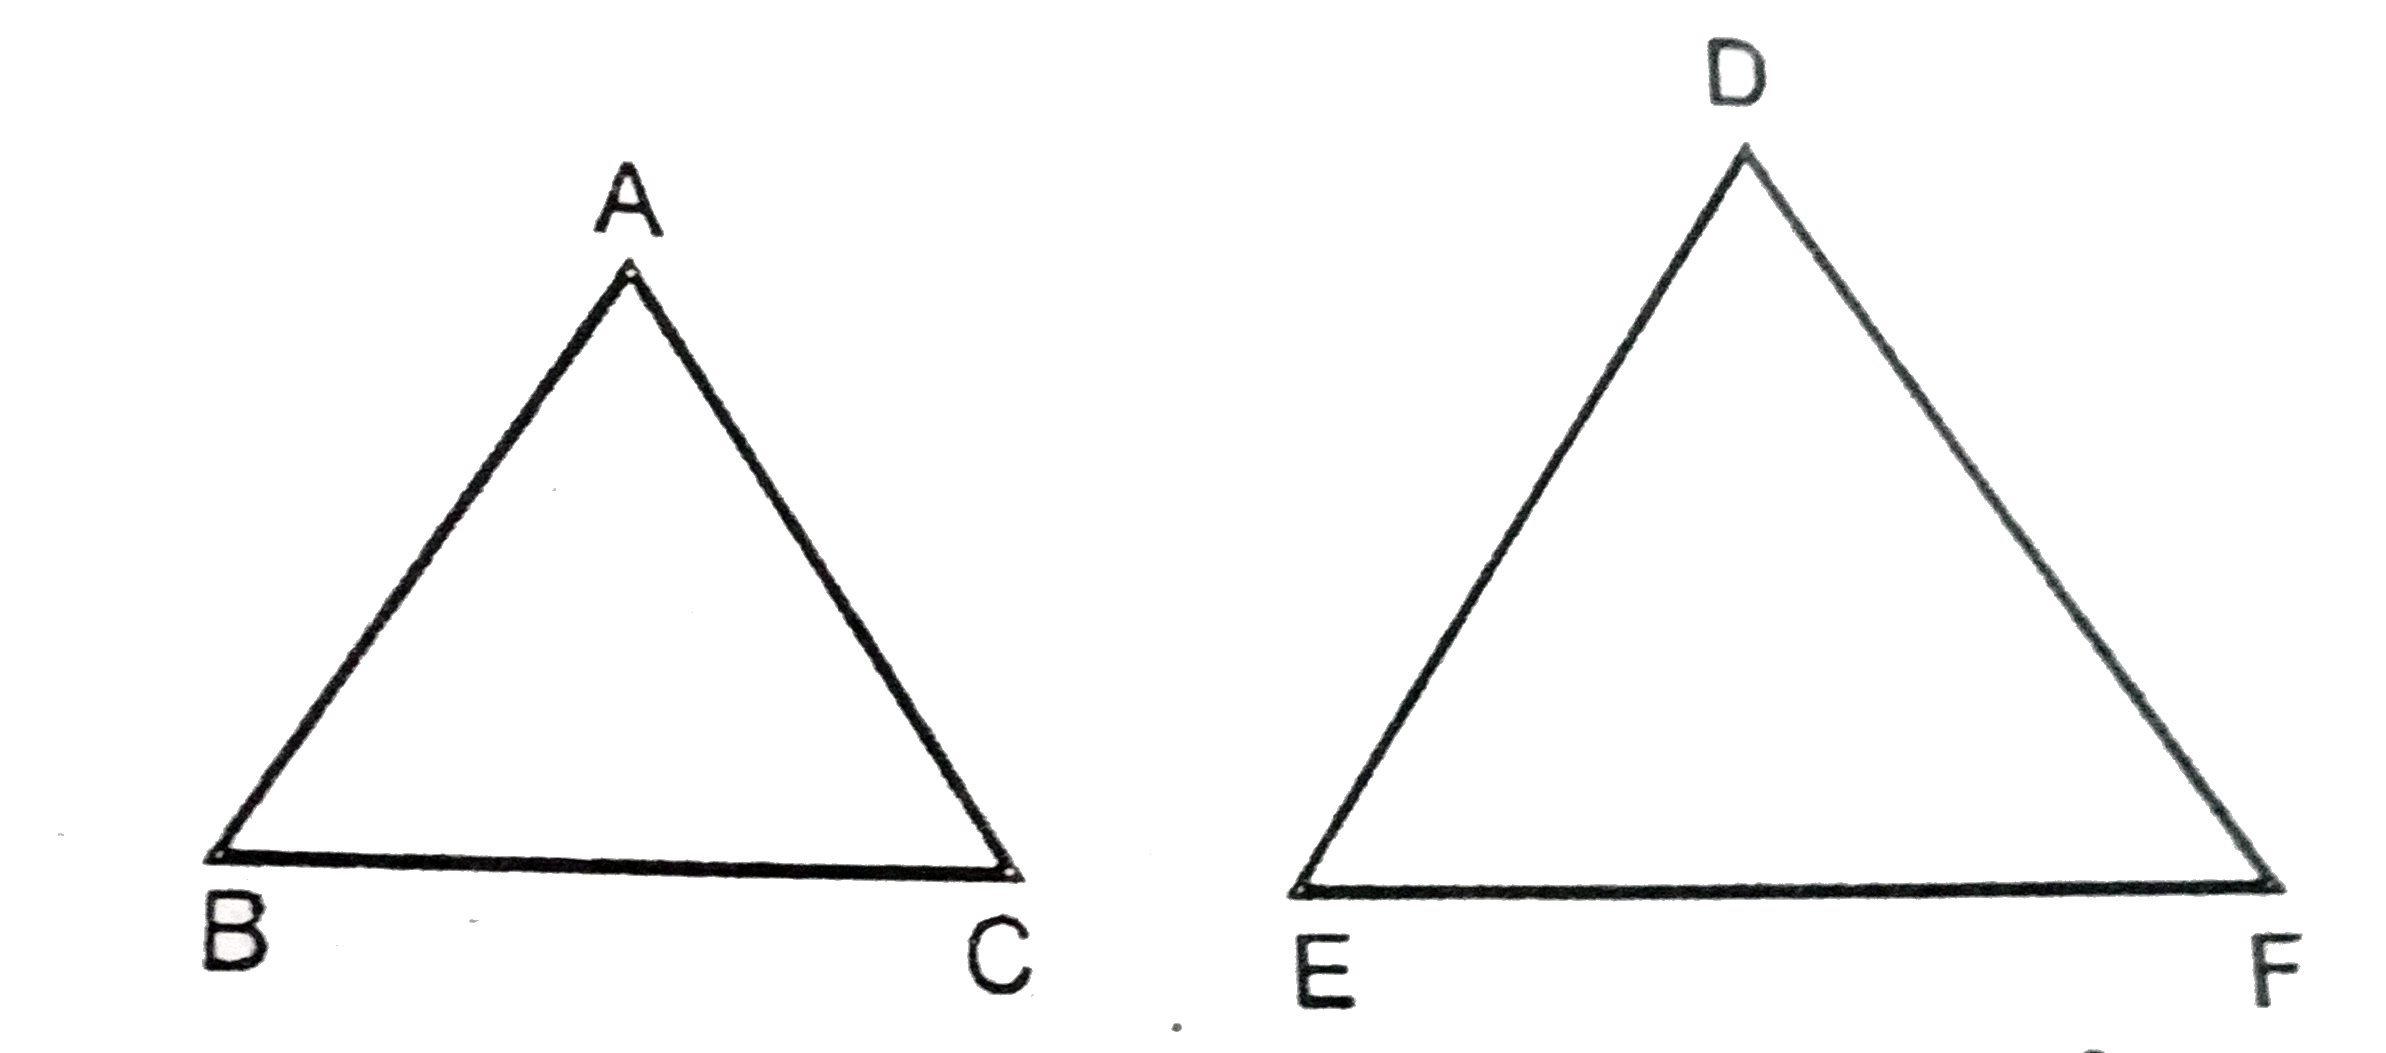 दिए गये चित्र में DeltaABC और DeltaDEF समरूप है । BC=3,EF=4cm और DeltaABC का क्षे०=54cm^2DeltaDEF का क्षेत्रफल ज्ञात करें ।